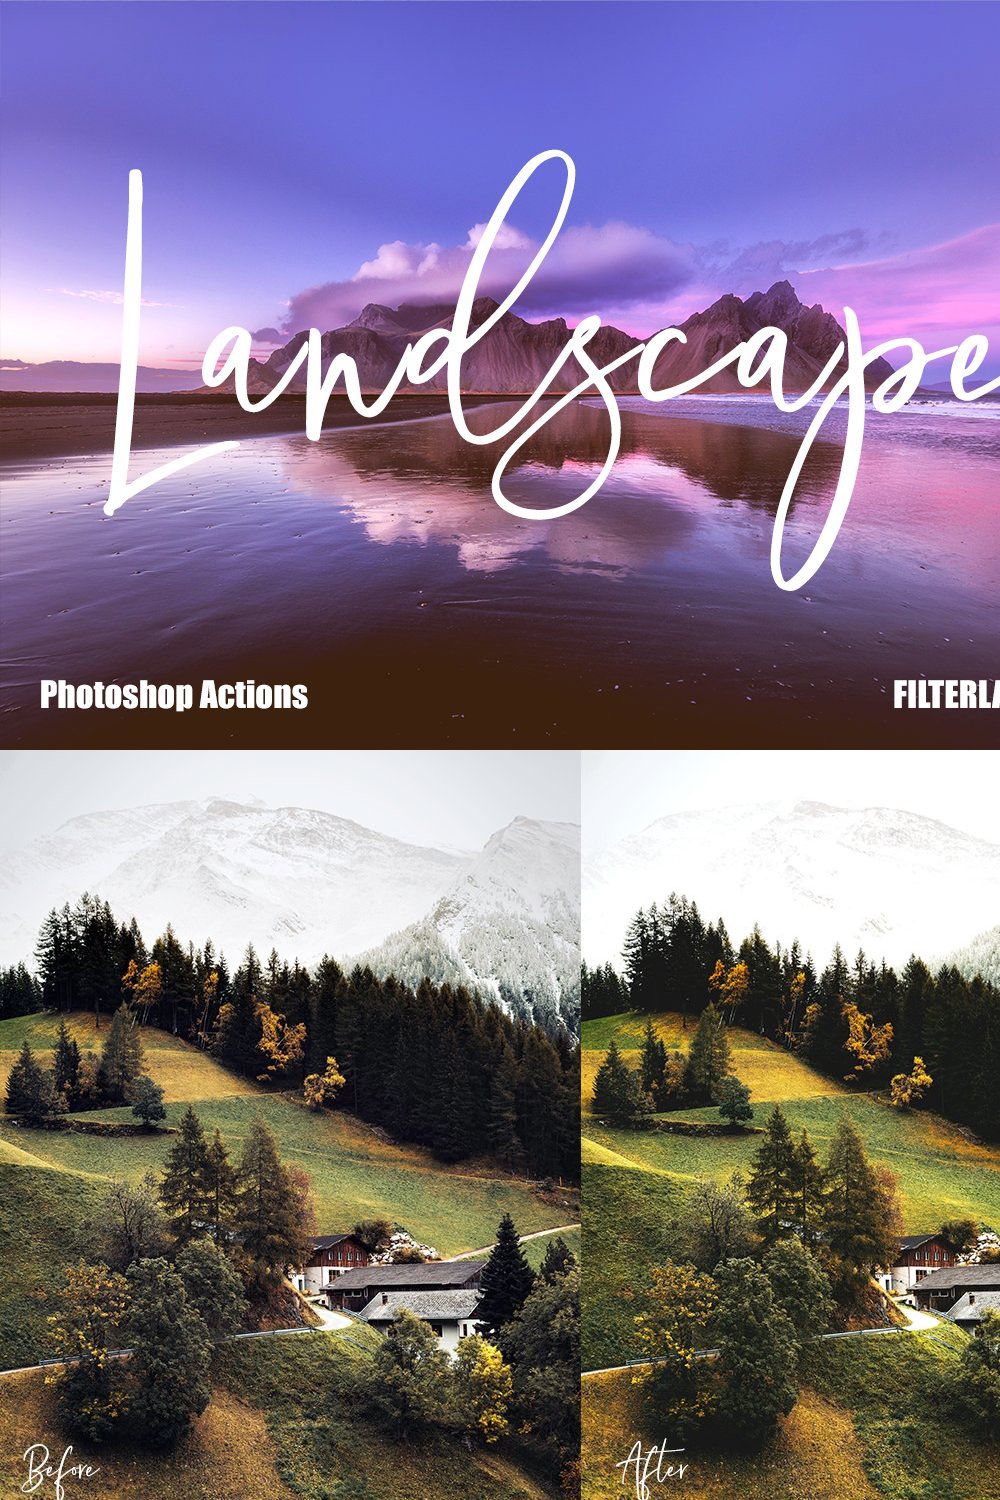 Landscape Actions | Photoshop pinterest preview image.